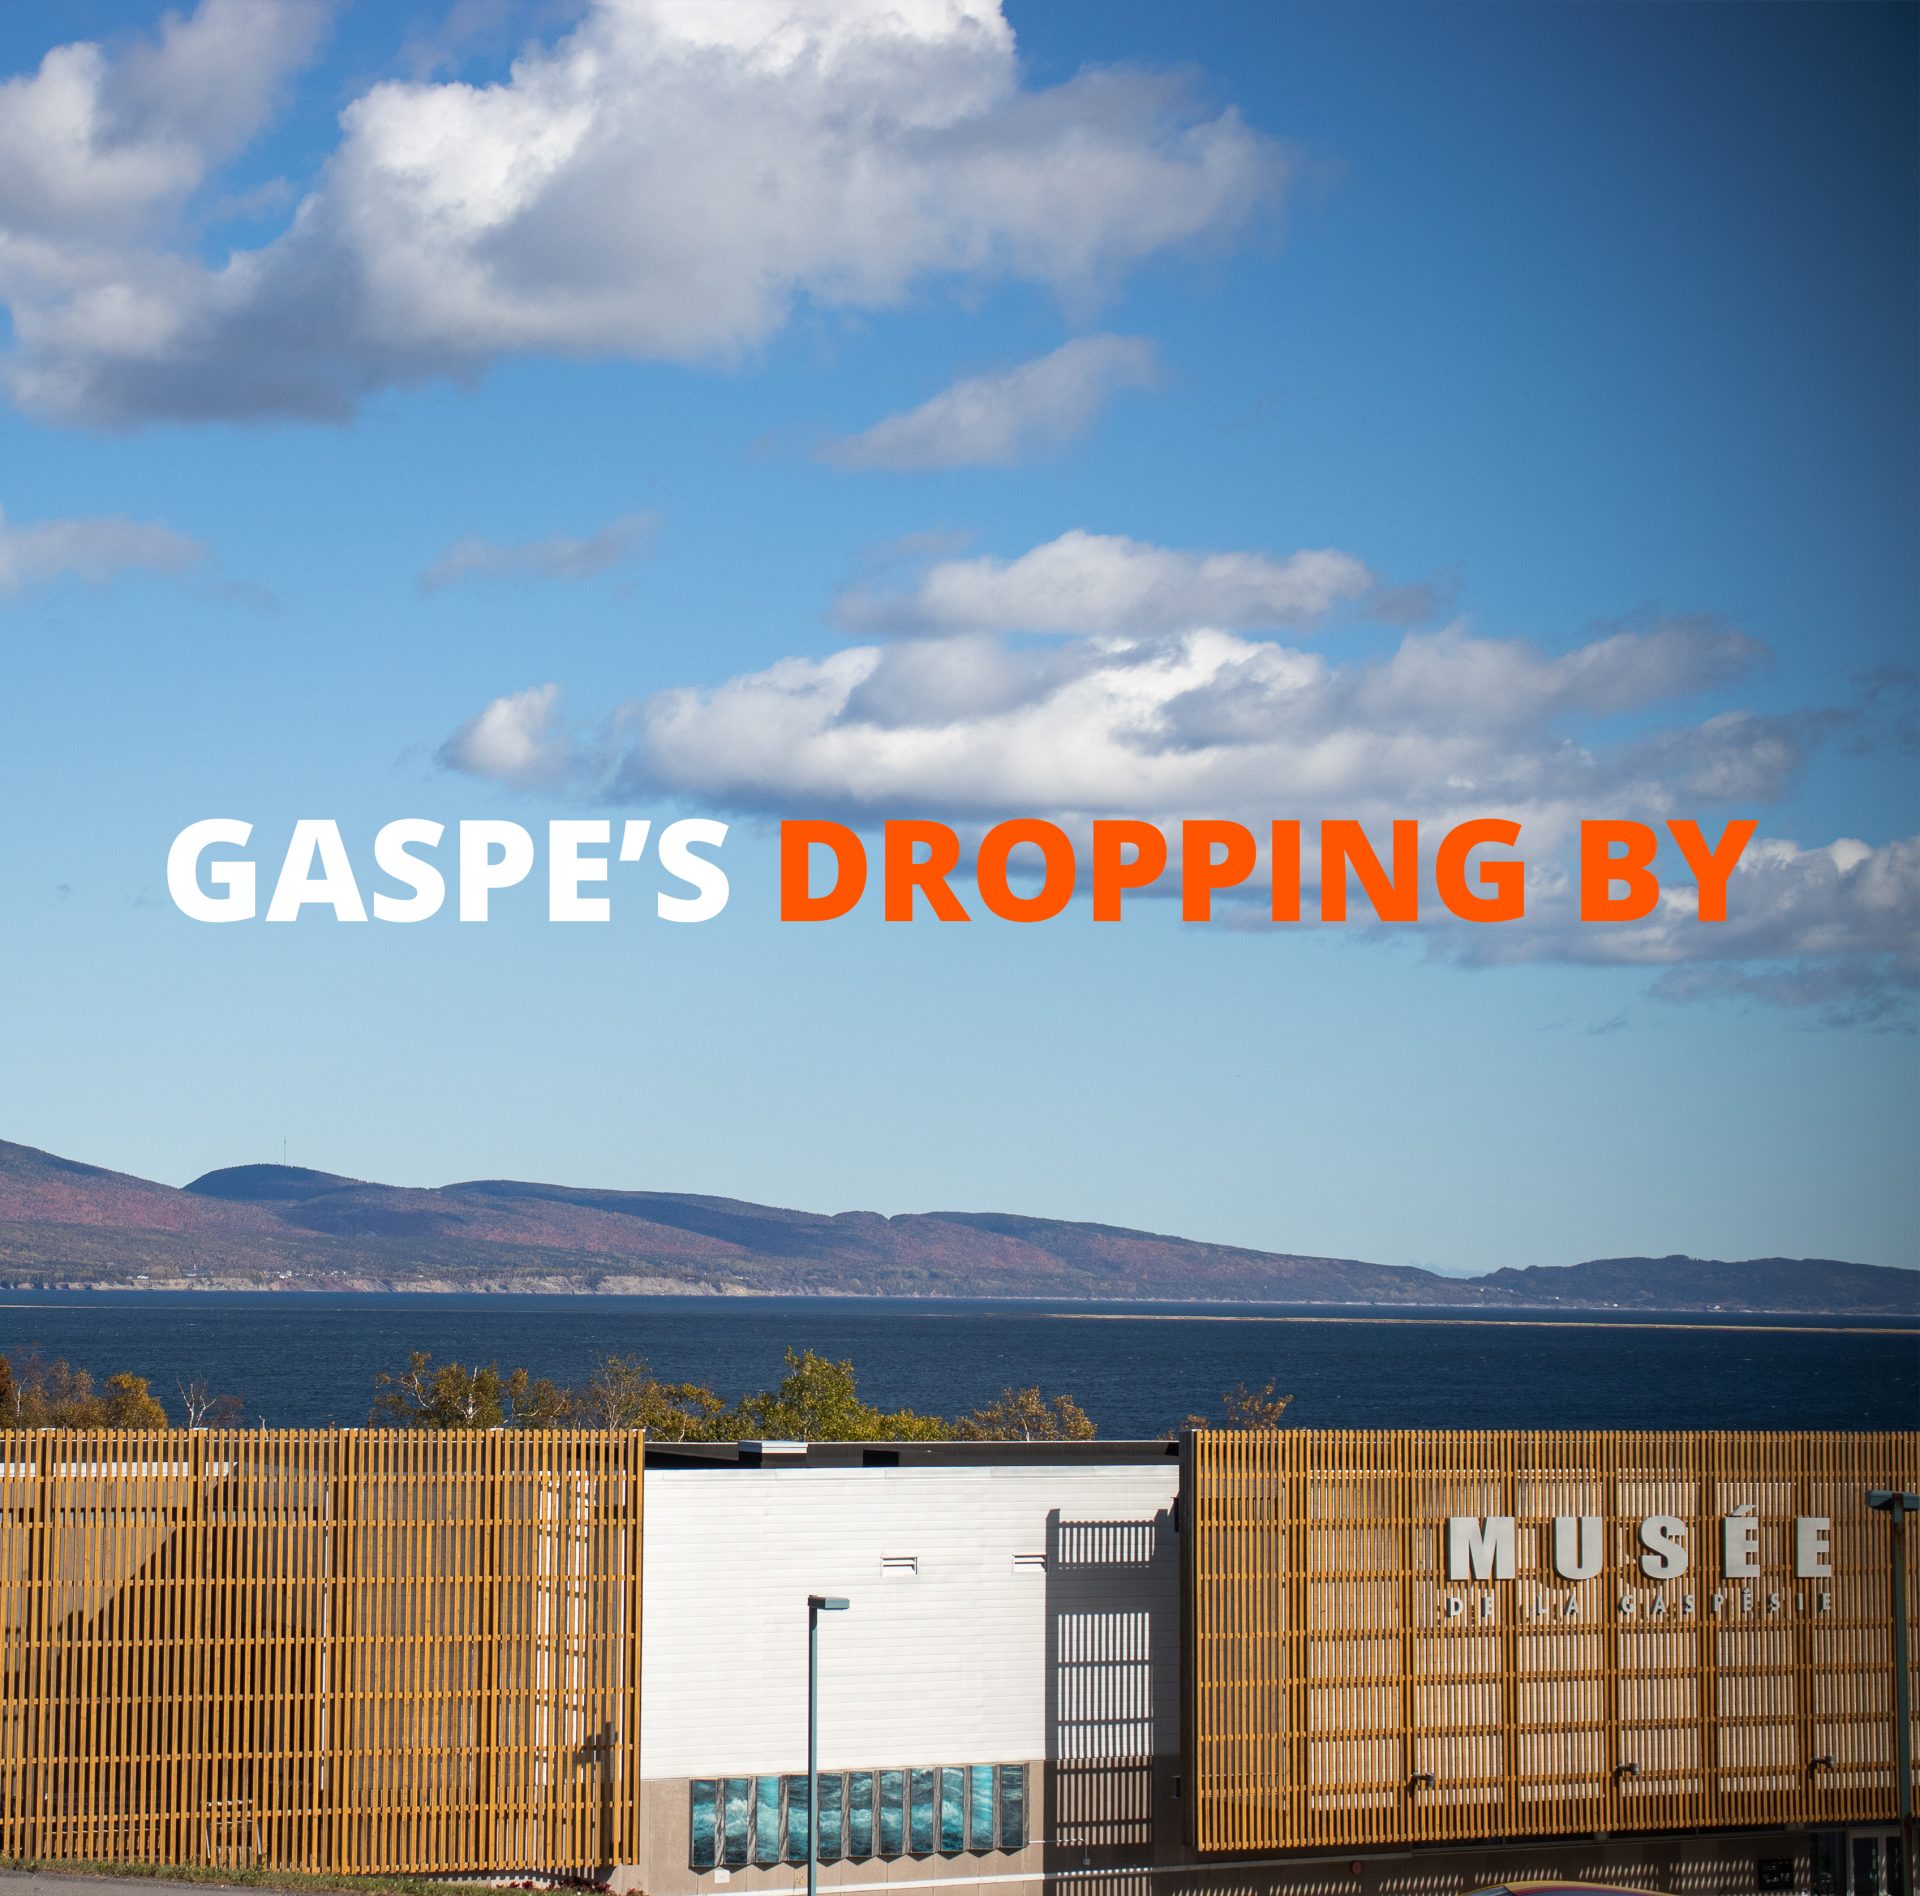 Gaspe’s dropping by : Visit the Musée de la Gaspésie